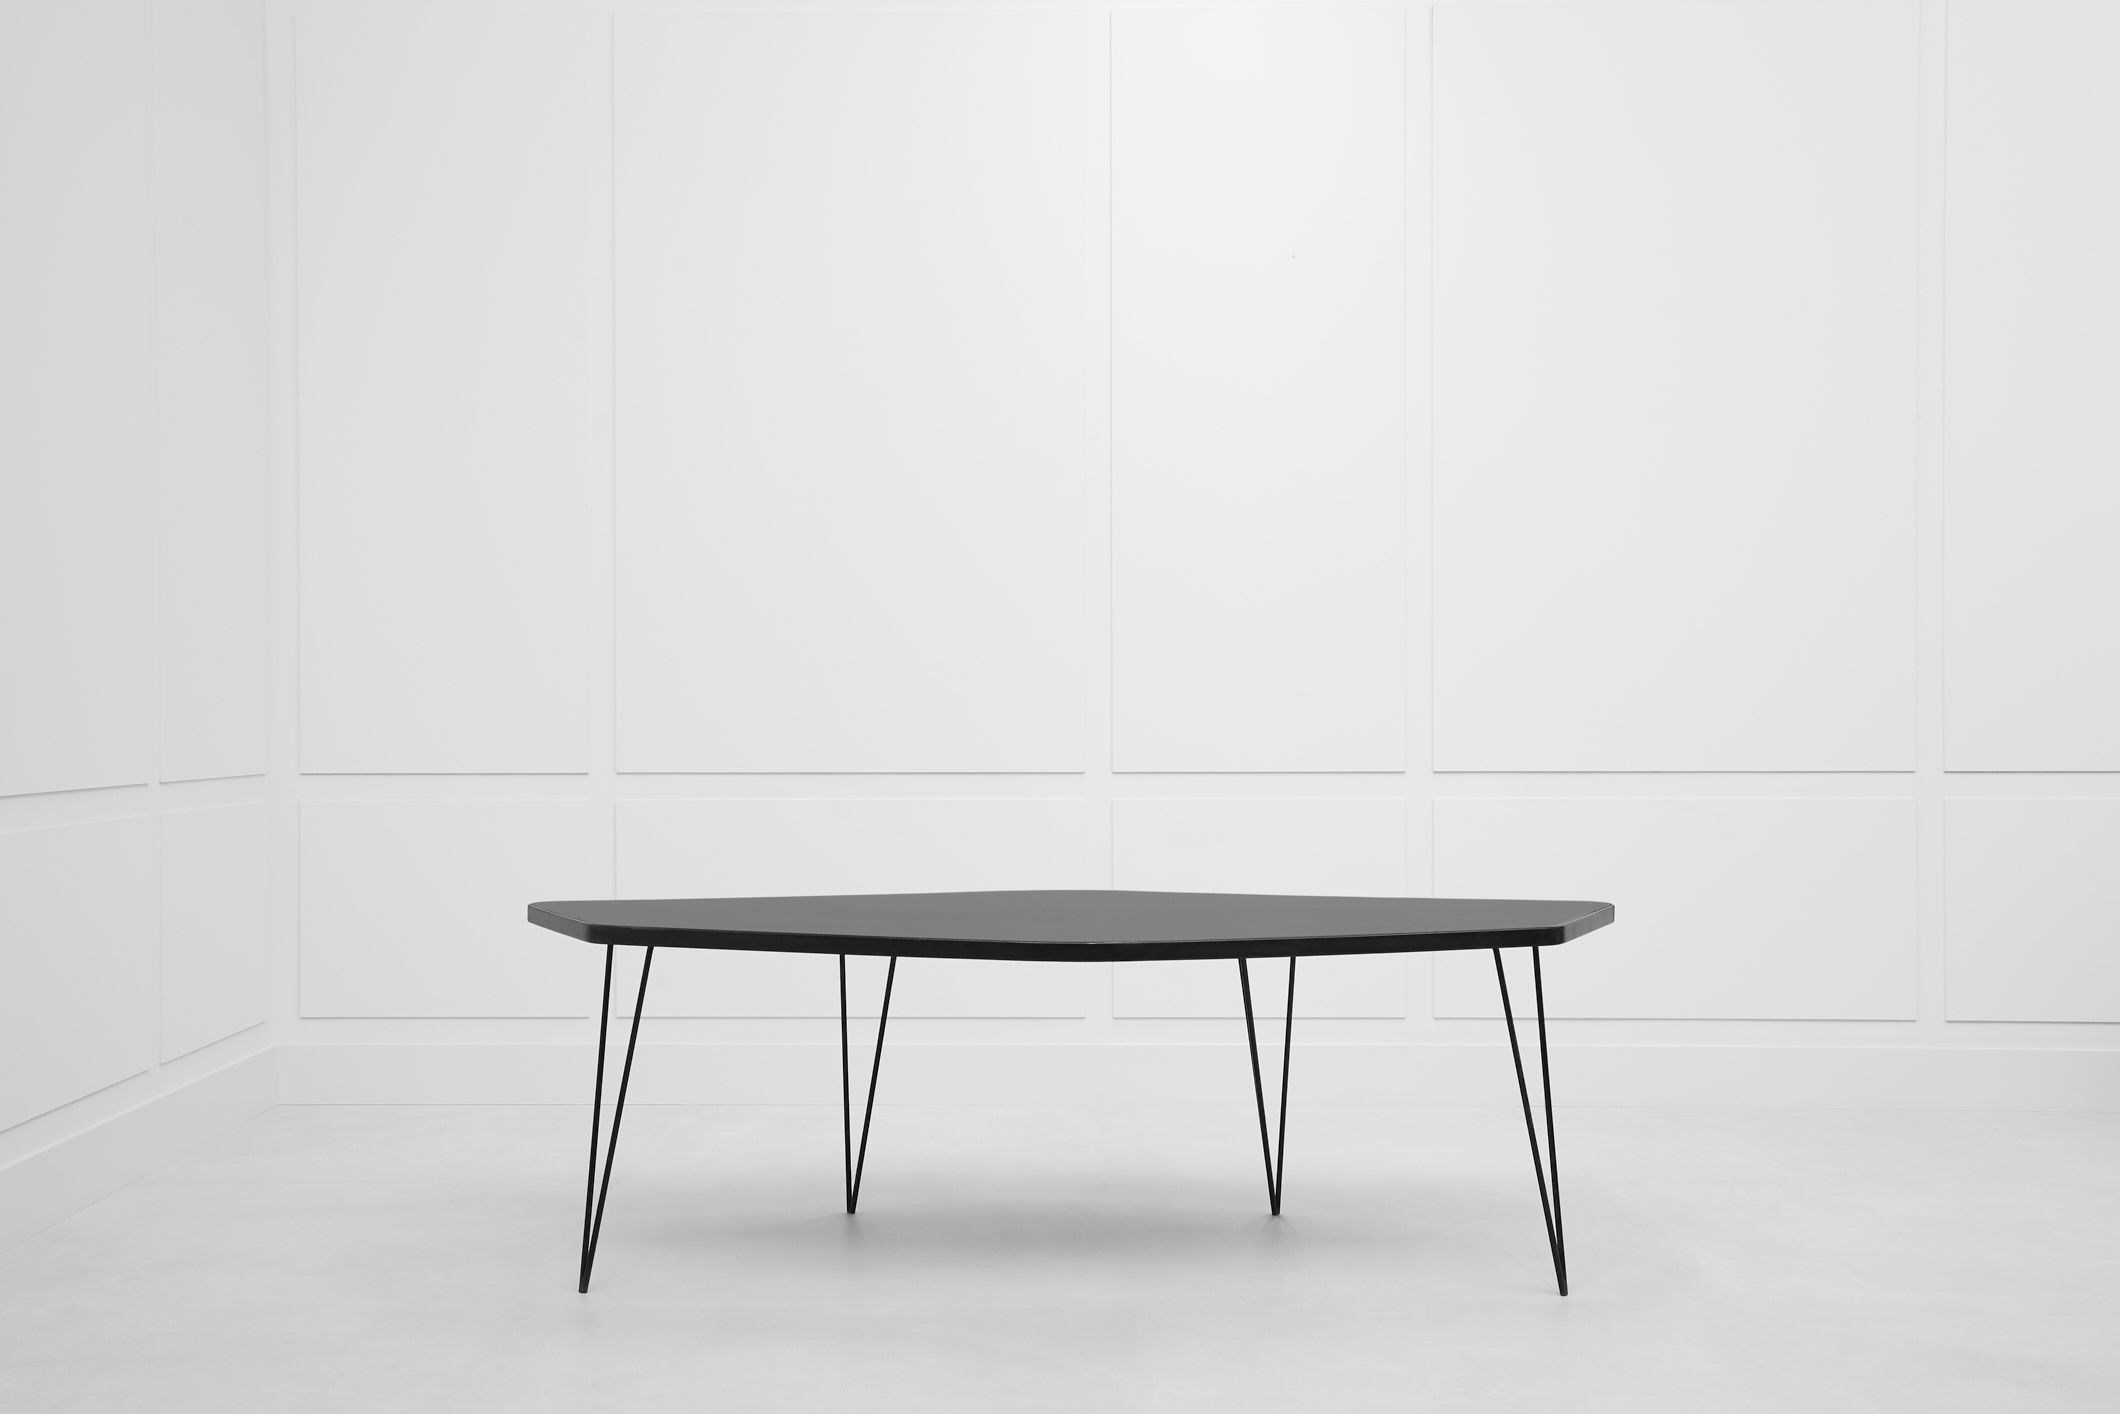 Joaquim Tenreiro, ‘Abstrata’ table, vue 02